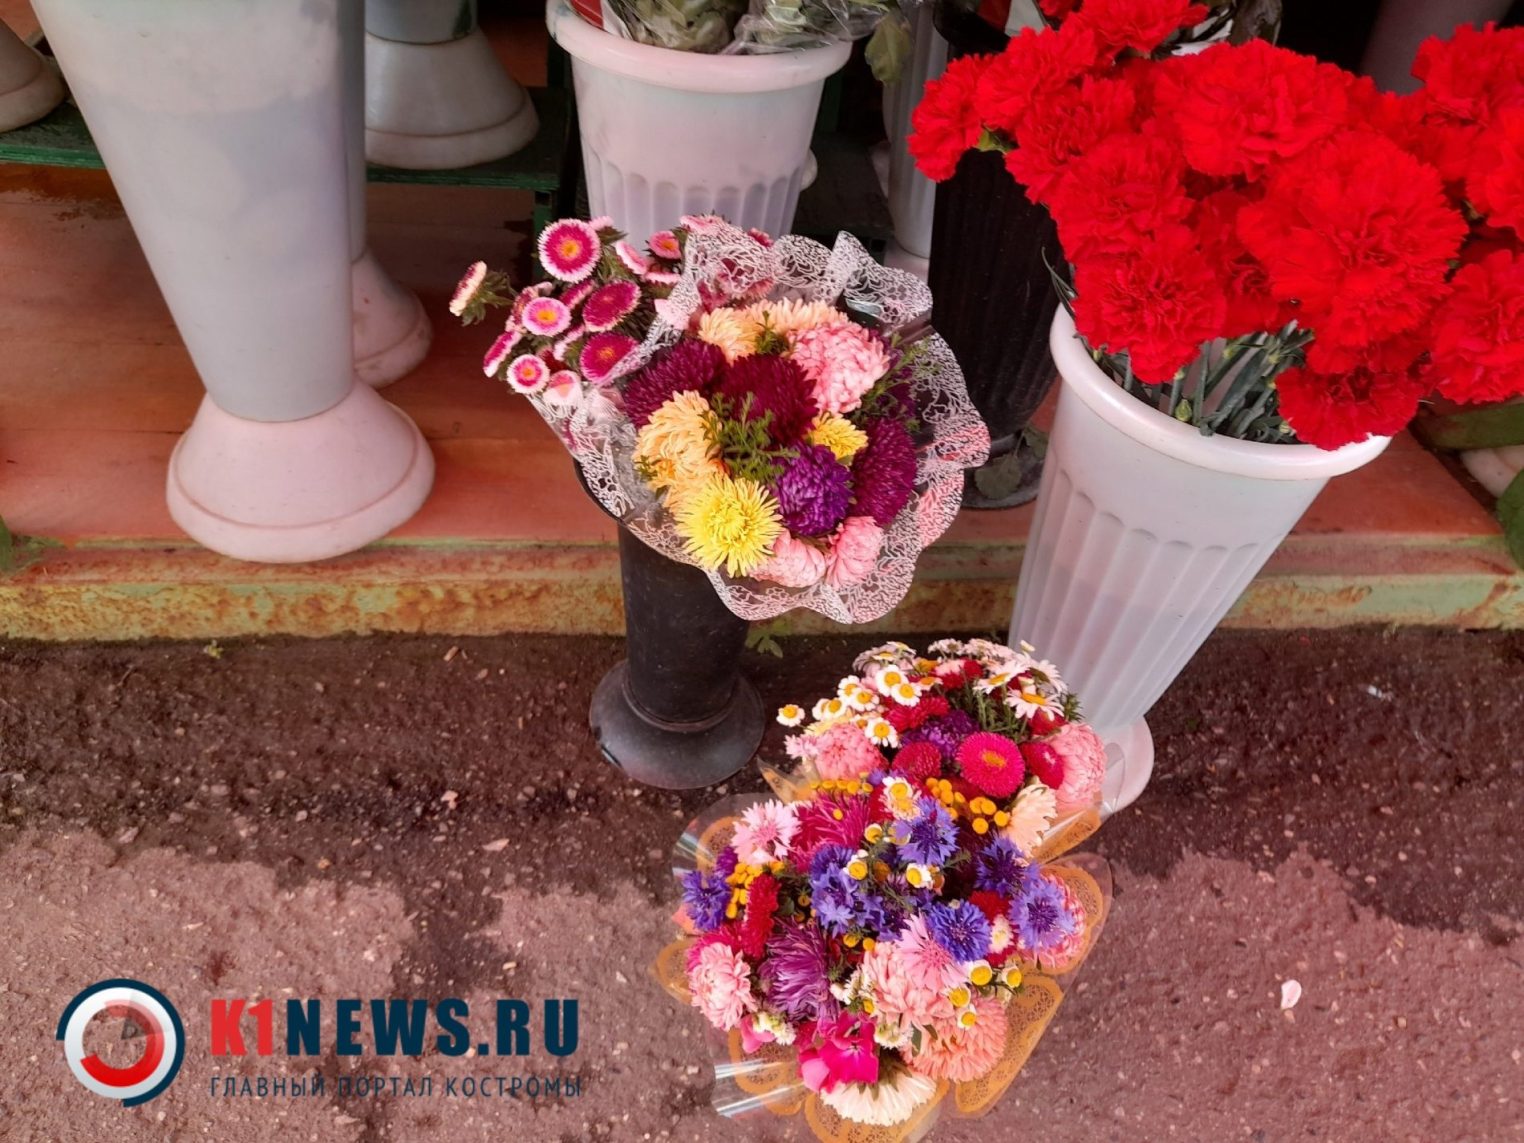 Стали известны цены на цветы к 1 сентября в Костроме